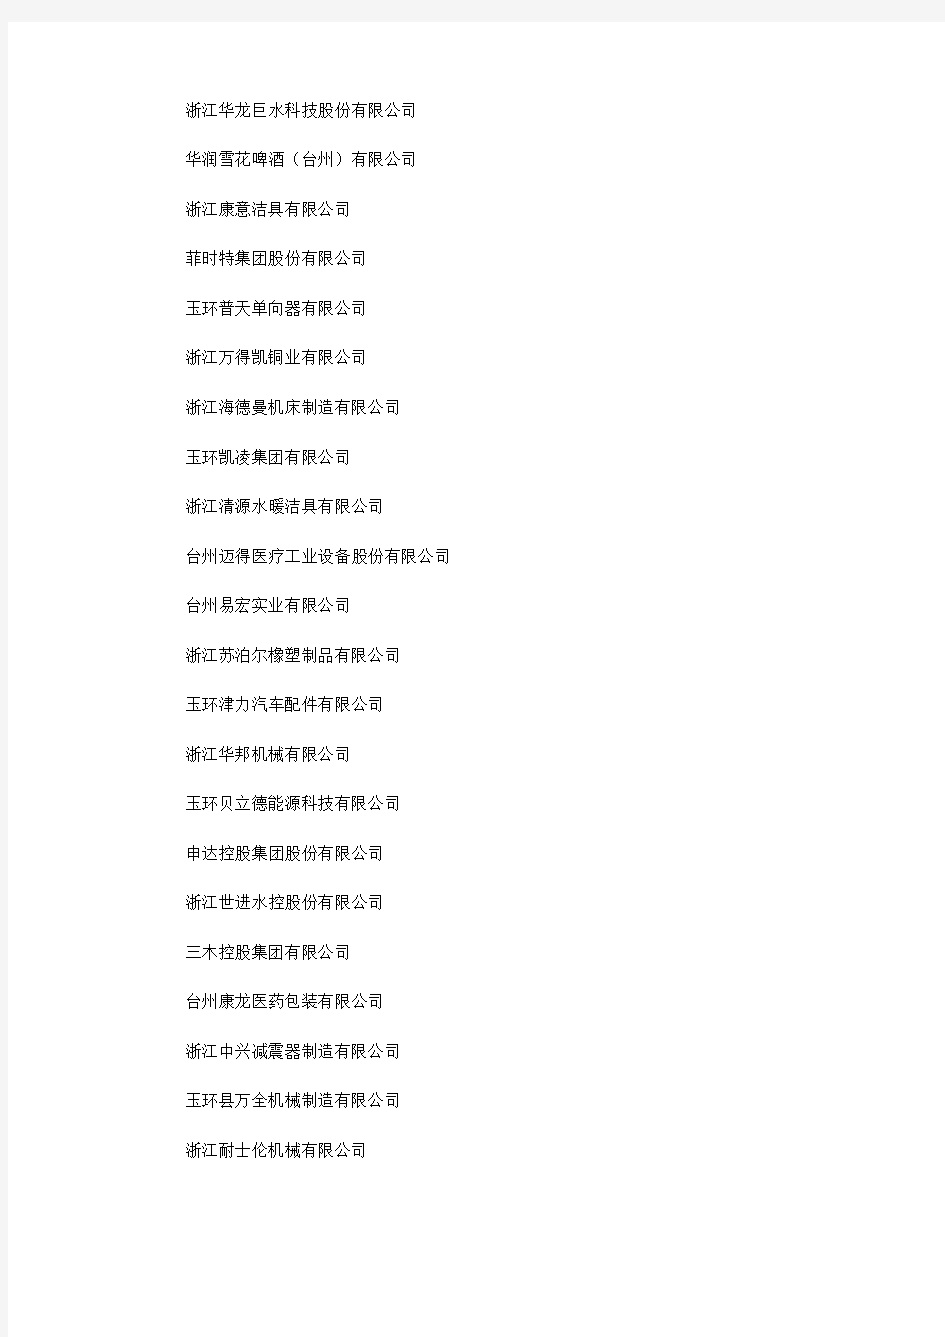 2013年度玉环县“三龙”企业(原玉环百强企业名单)